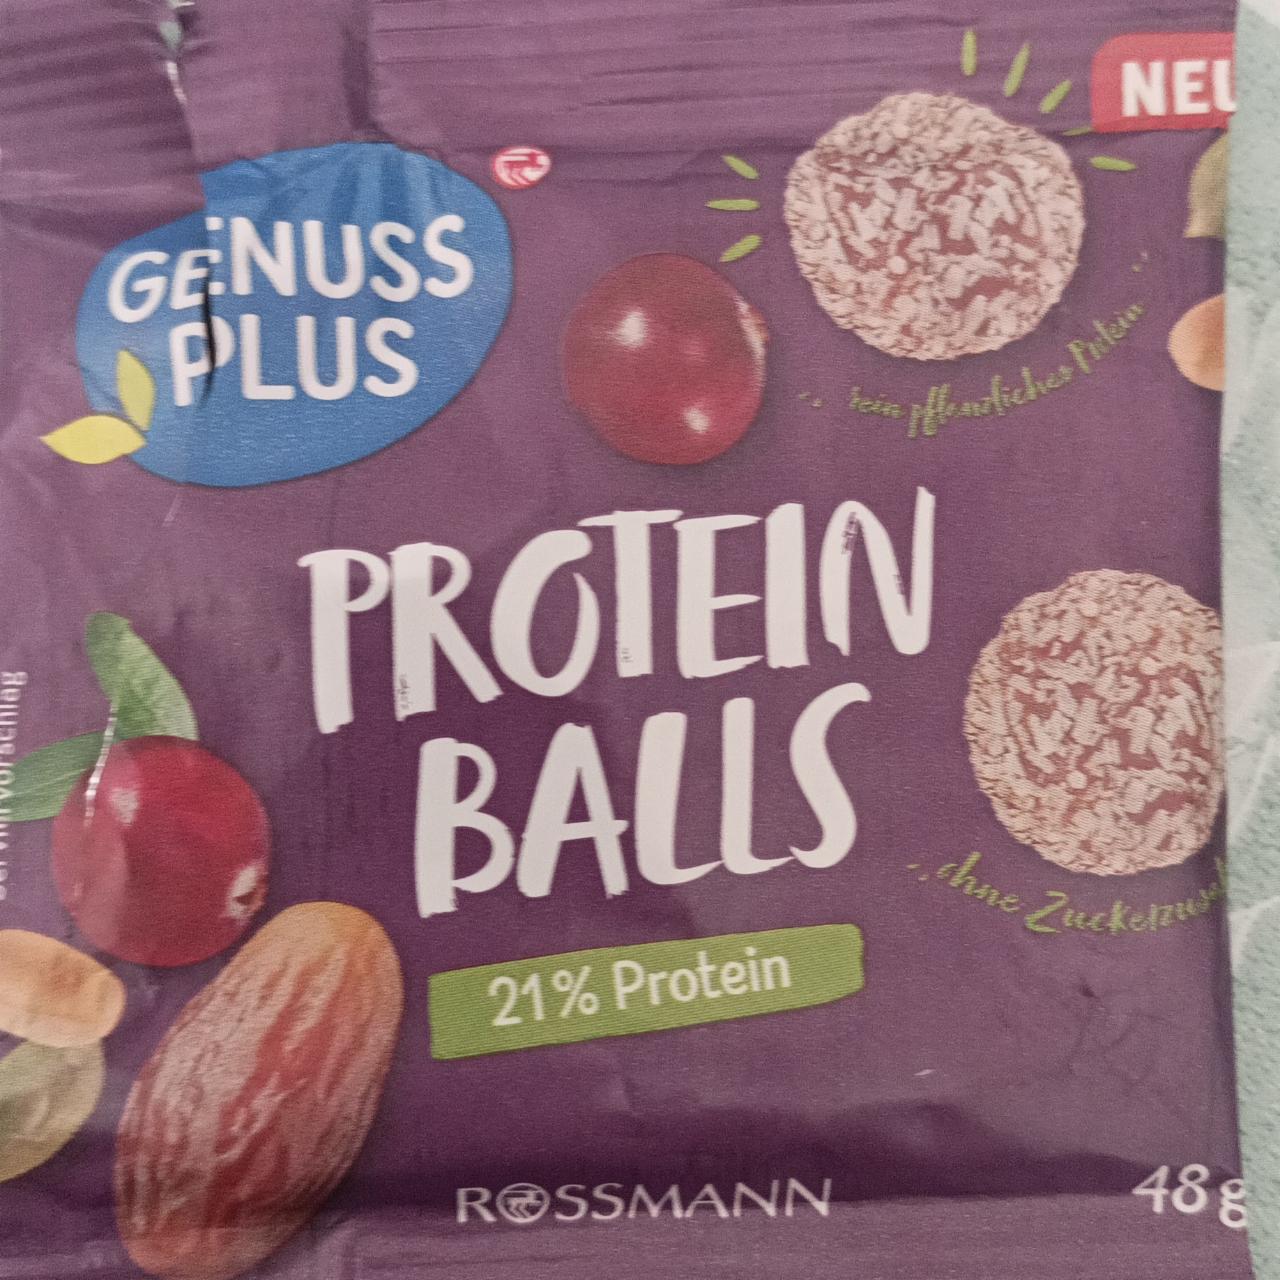 Fotografie - Protein Balls 21% Protein Genuss plus